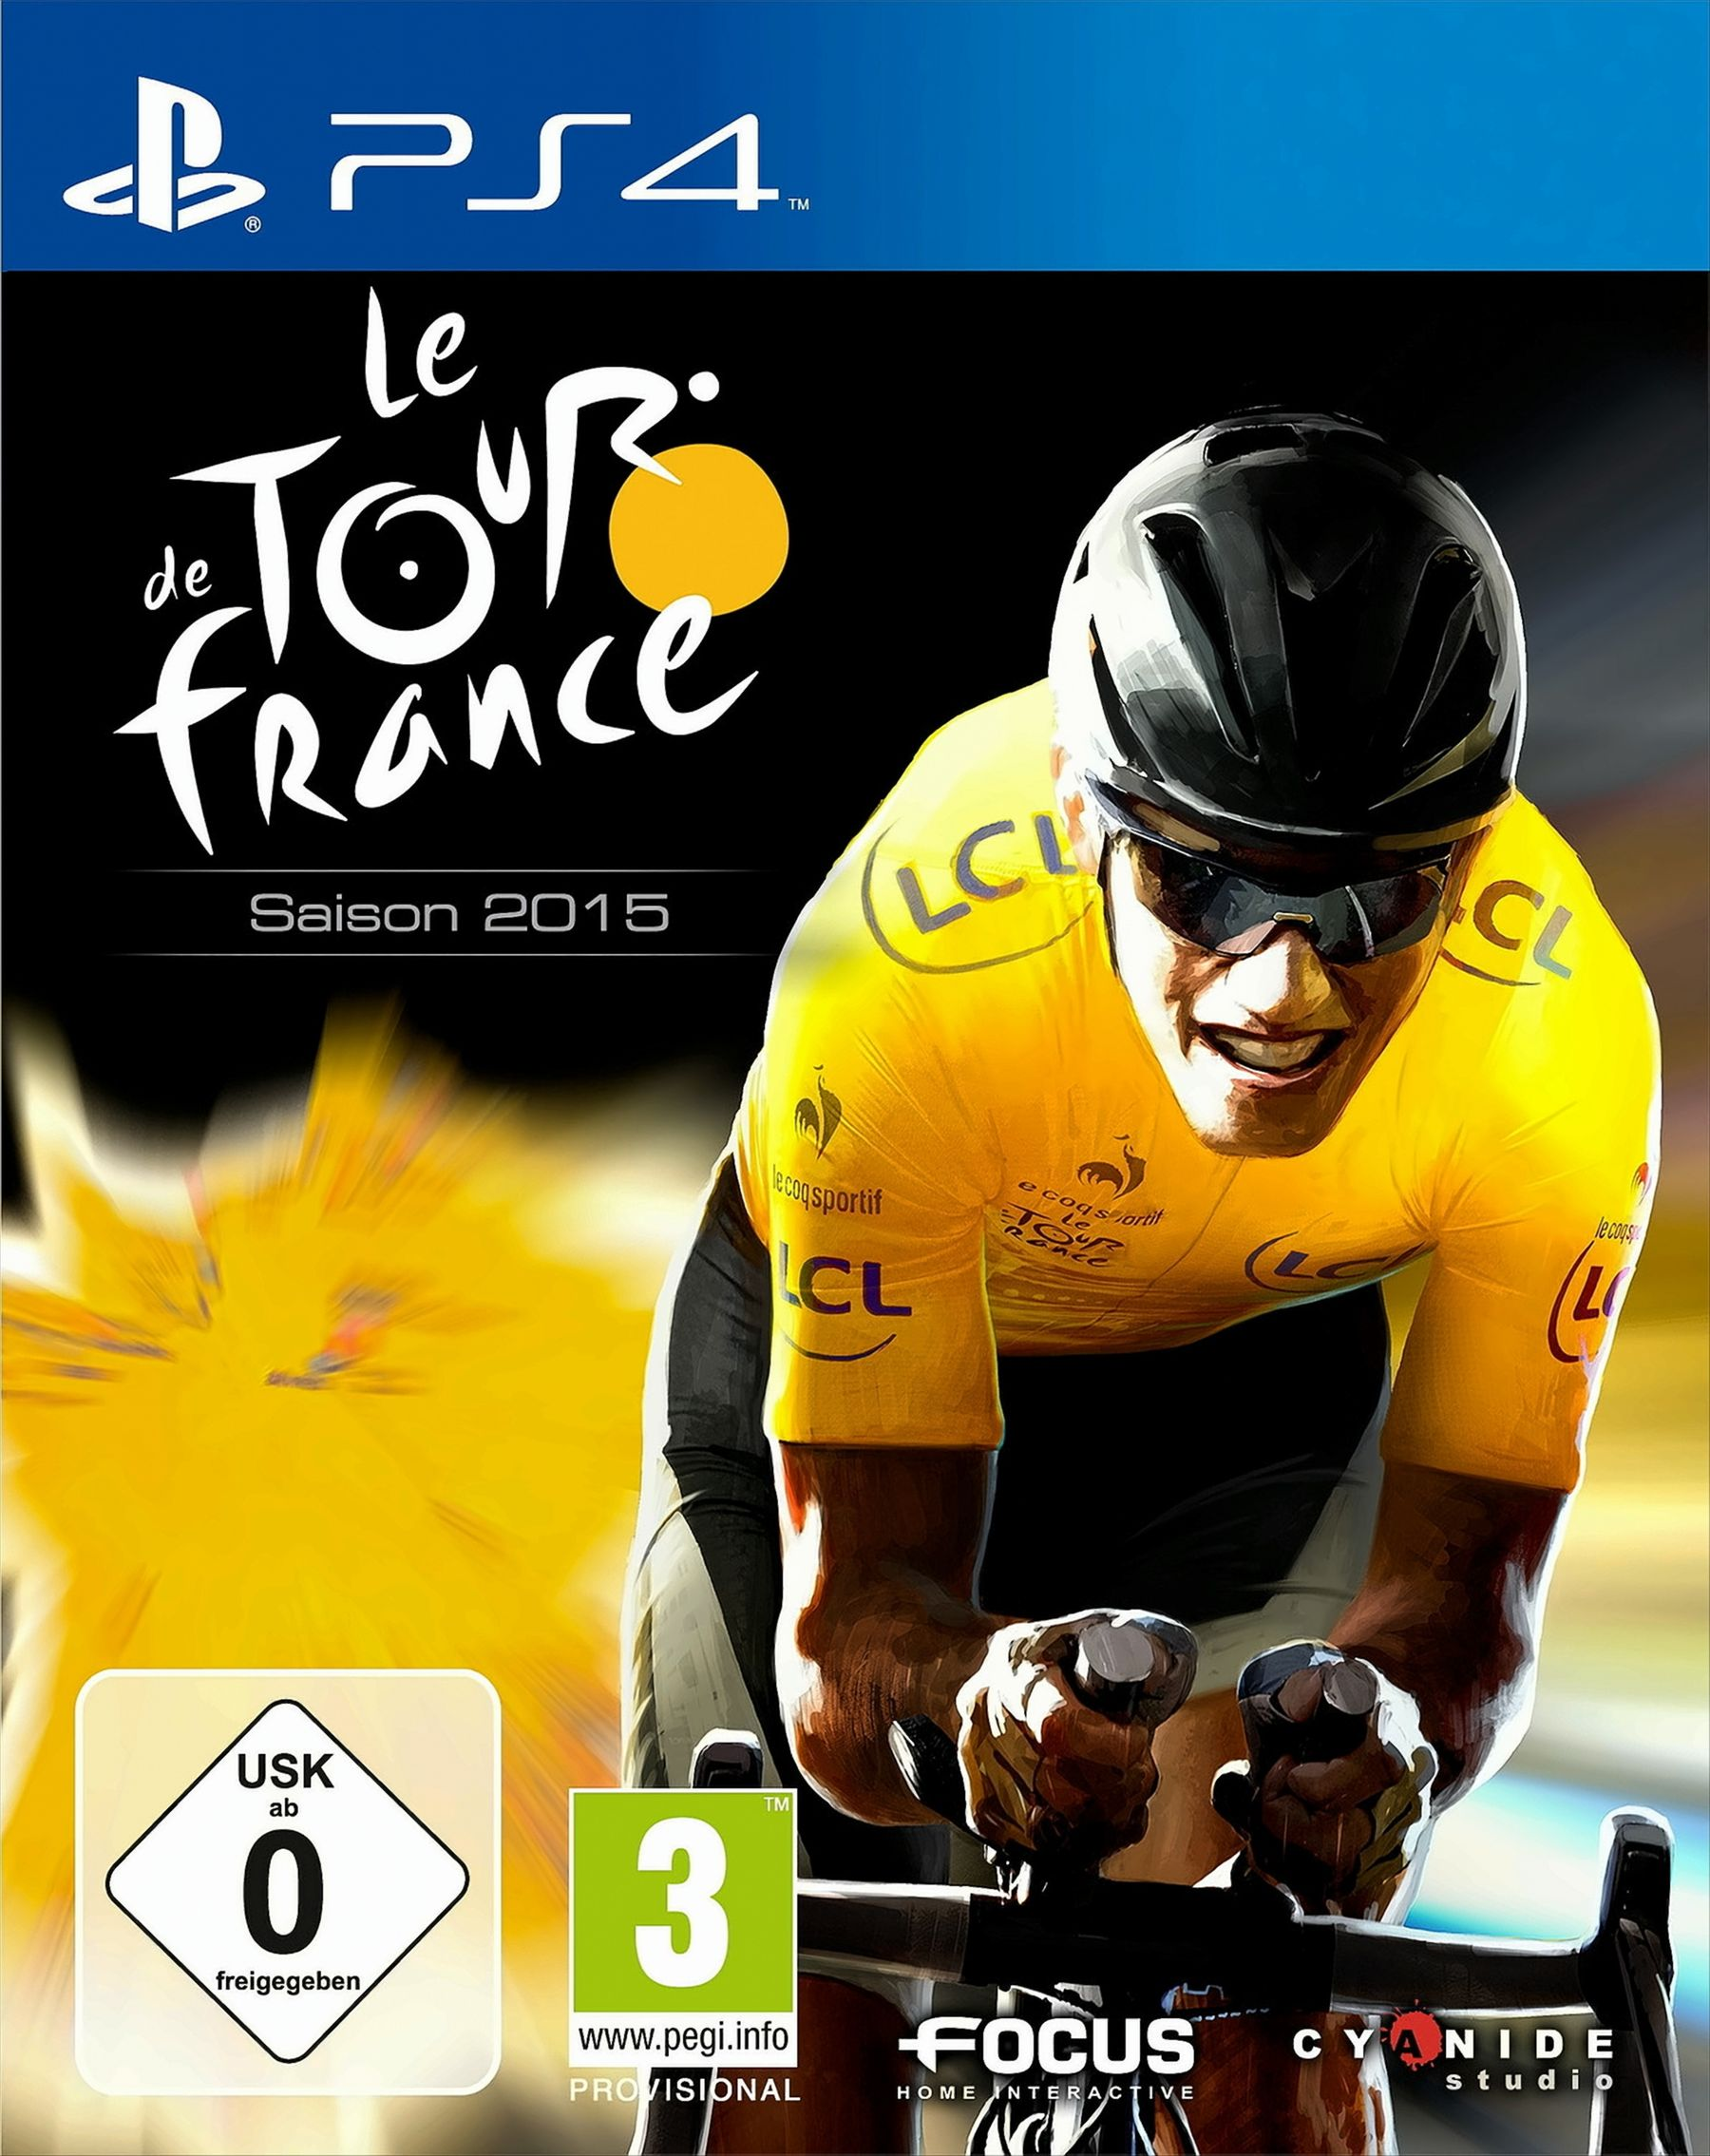 2015 de - Tour France Le [PlayStation 4]